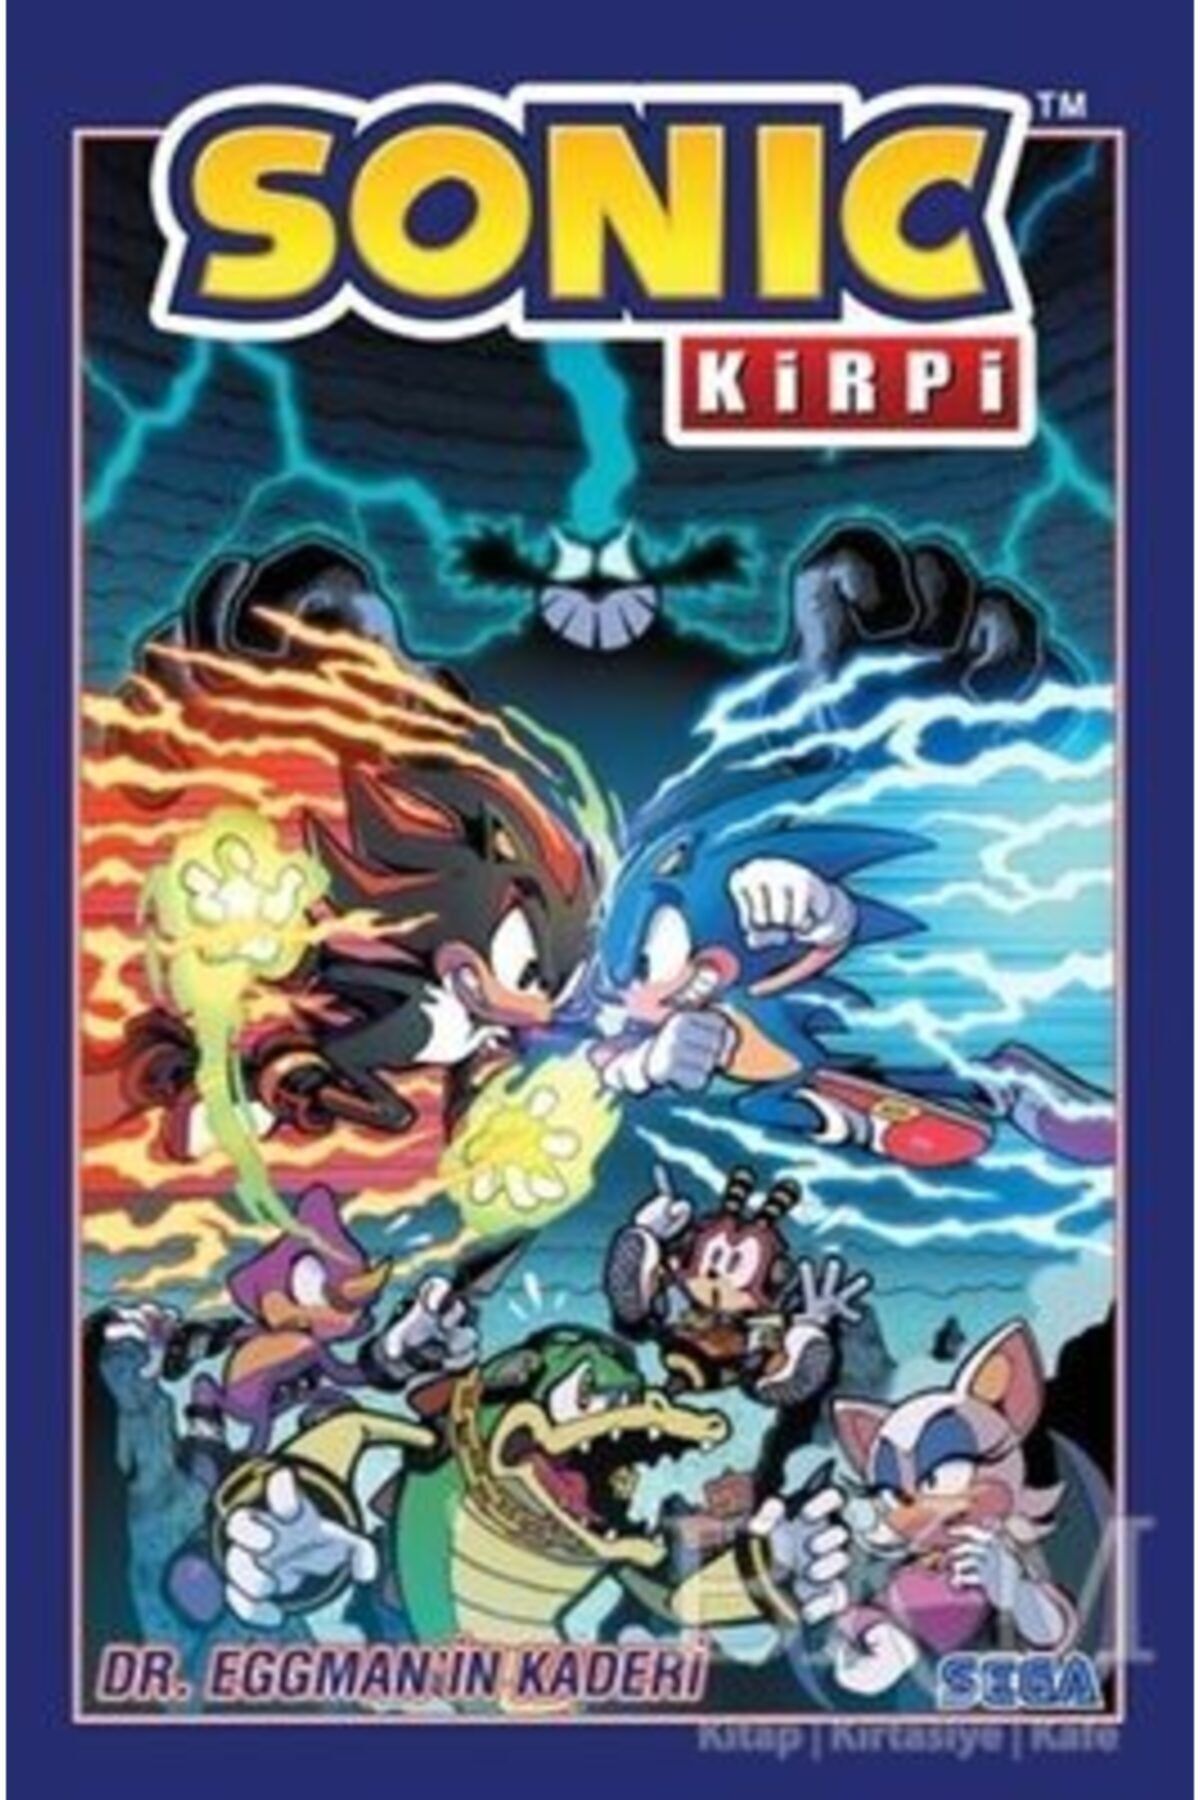 Sega Kirpi Sonic Cilt 2 - Dr. Eggman’in Kaderi